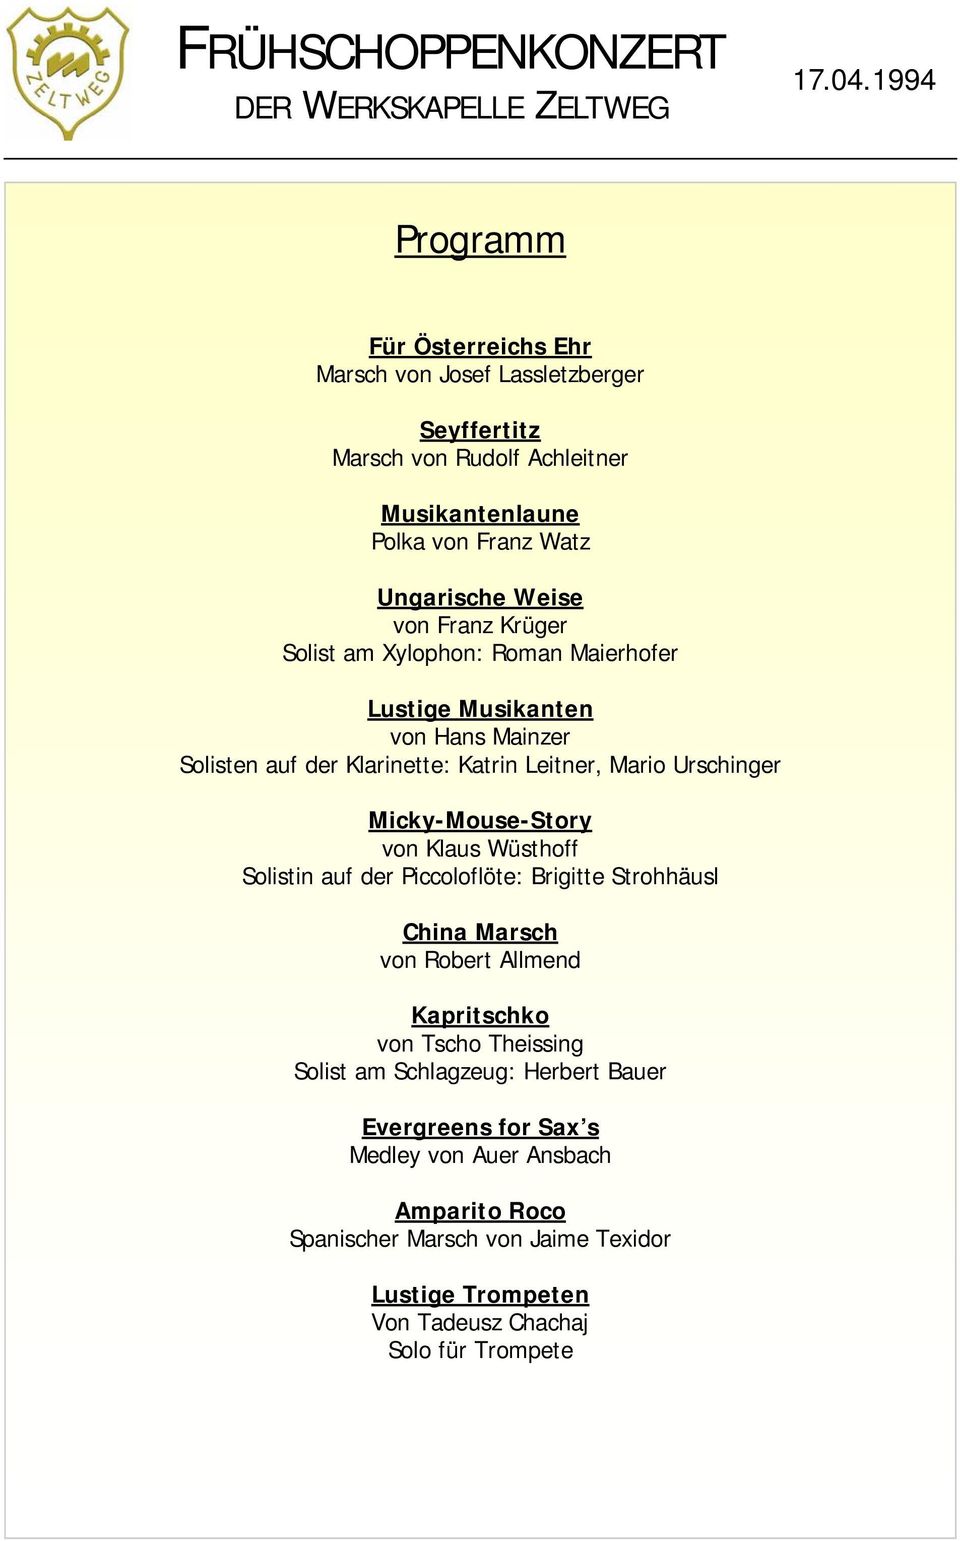 Krüger Solist am Xylophon: Roman Maierhofer Lustige Musikanten von Hans Mainzer Solisten auf der Klarinette: Katrin Leitner, Mario Urschinger Micky-Mouse-Story von